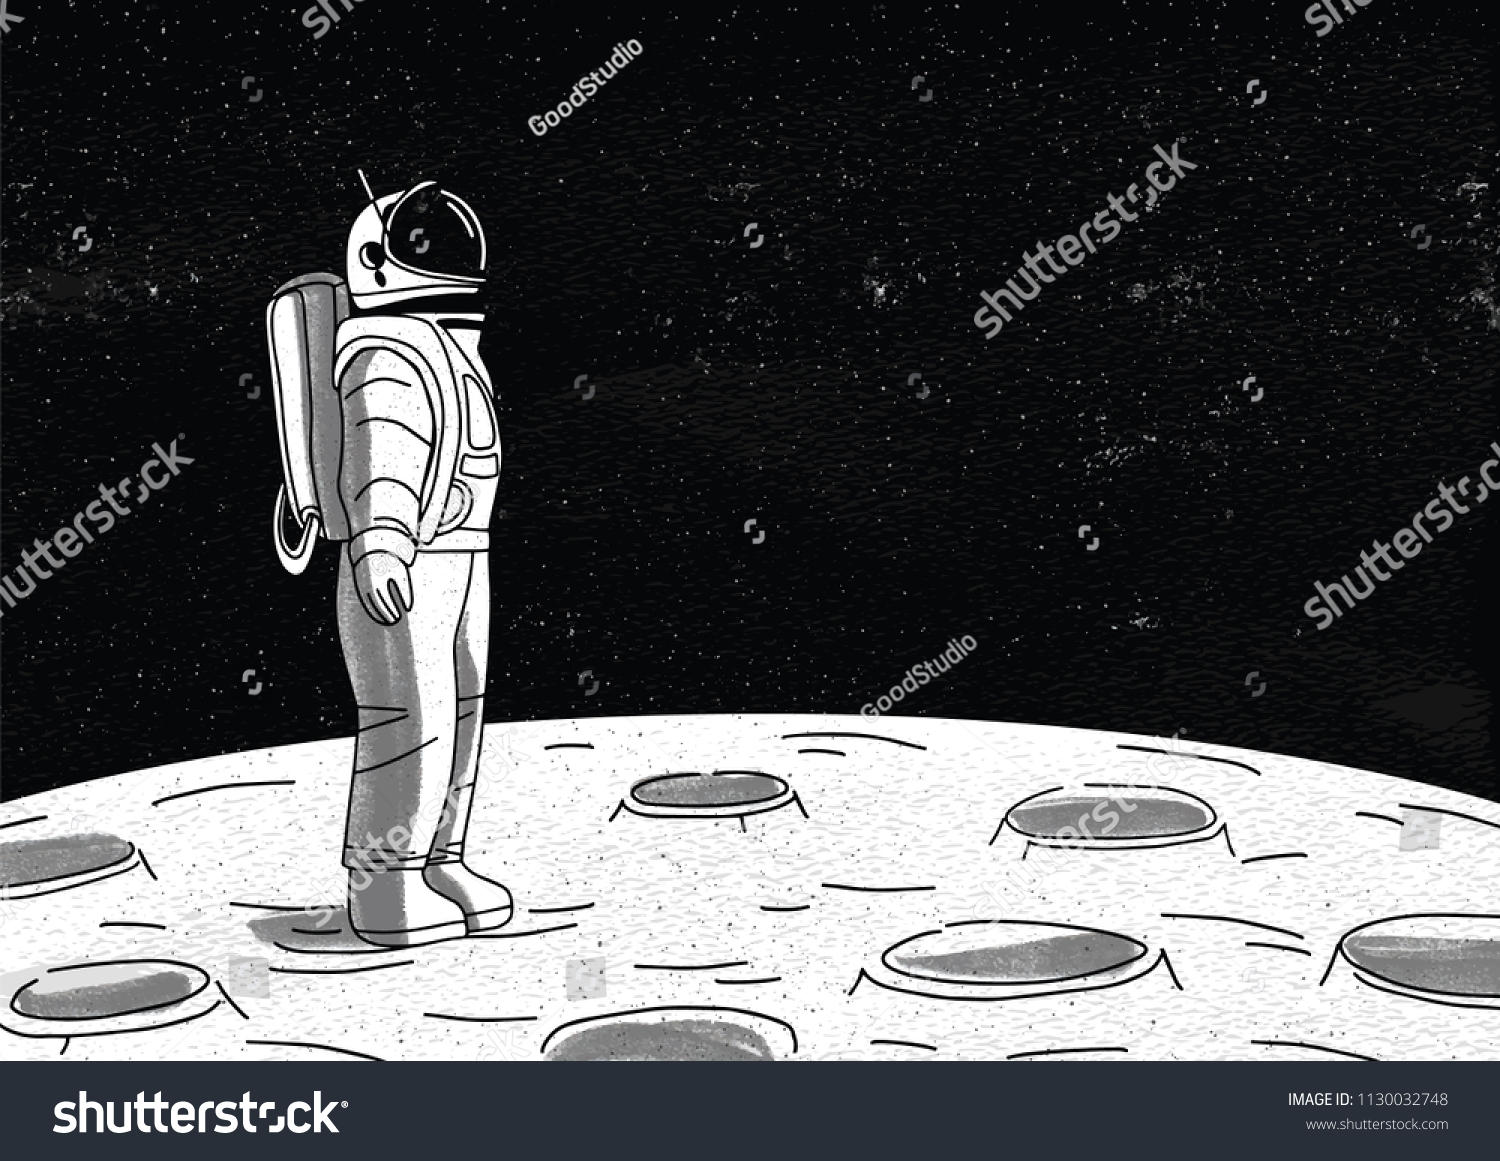 月面に立ち 星だらけの空間を見る宇宙服を着た孤独な宇宙飛行士 ミッション中に惑星や天体を探索する宇宙飛行士 白黒の手描きのベクターイラスト のベクター画像素材 ロイヤリティフリー